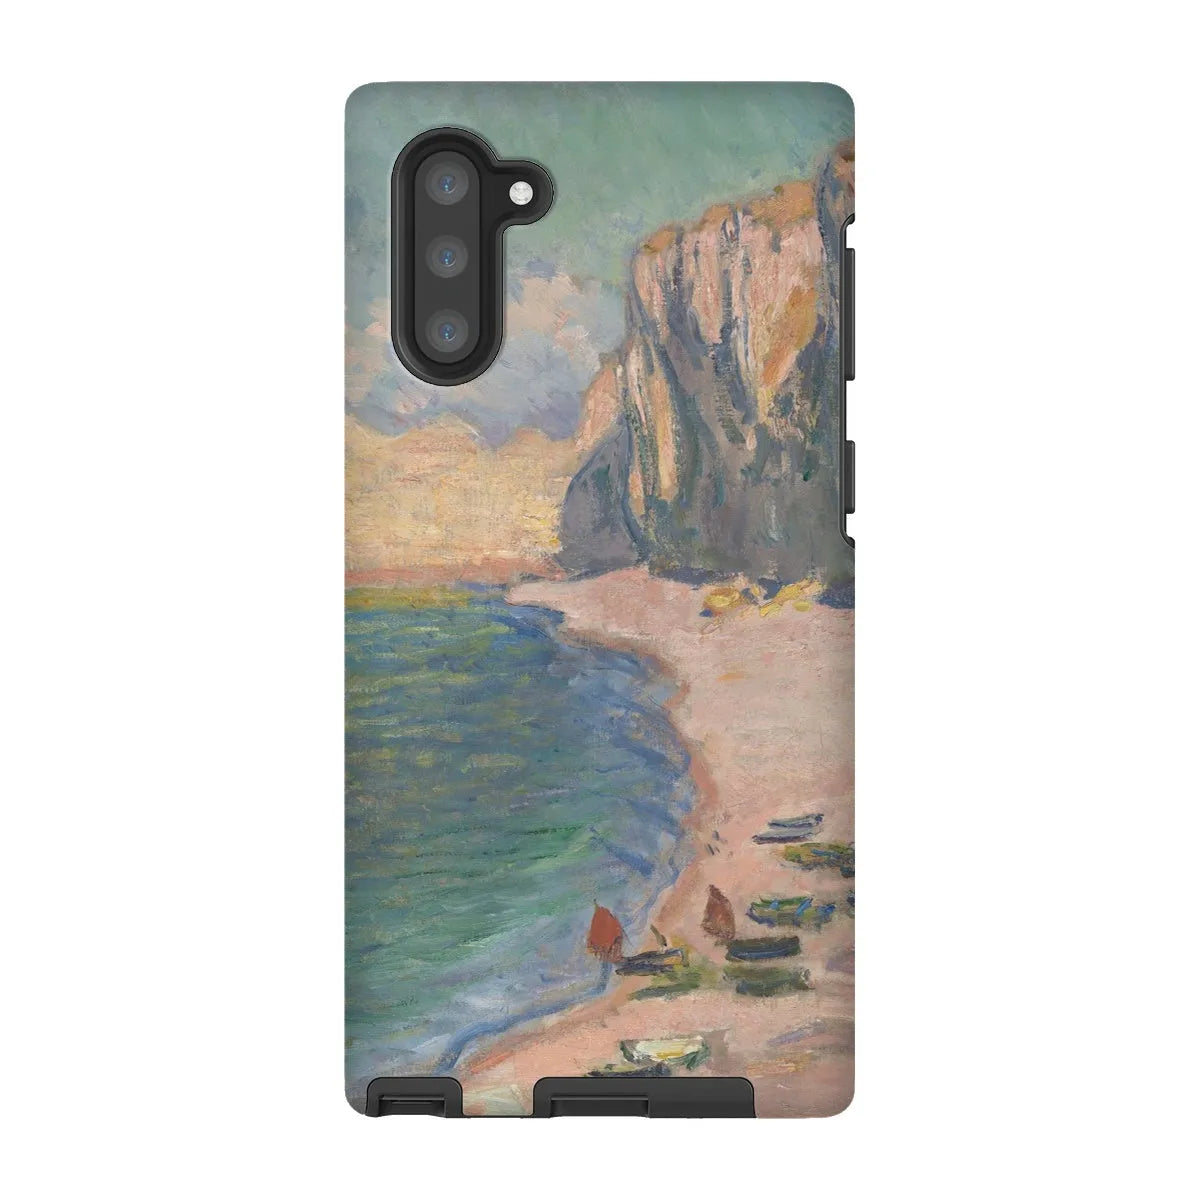 étretat - Impressionist Art Phone Case - Claude Monet - Samsung Galaxy Note 10 / Matte - Mobile Phone Cases